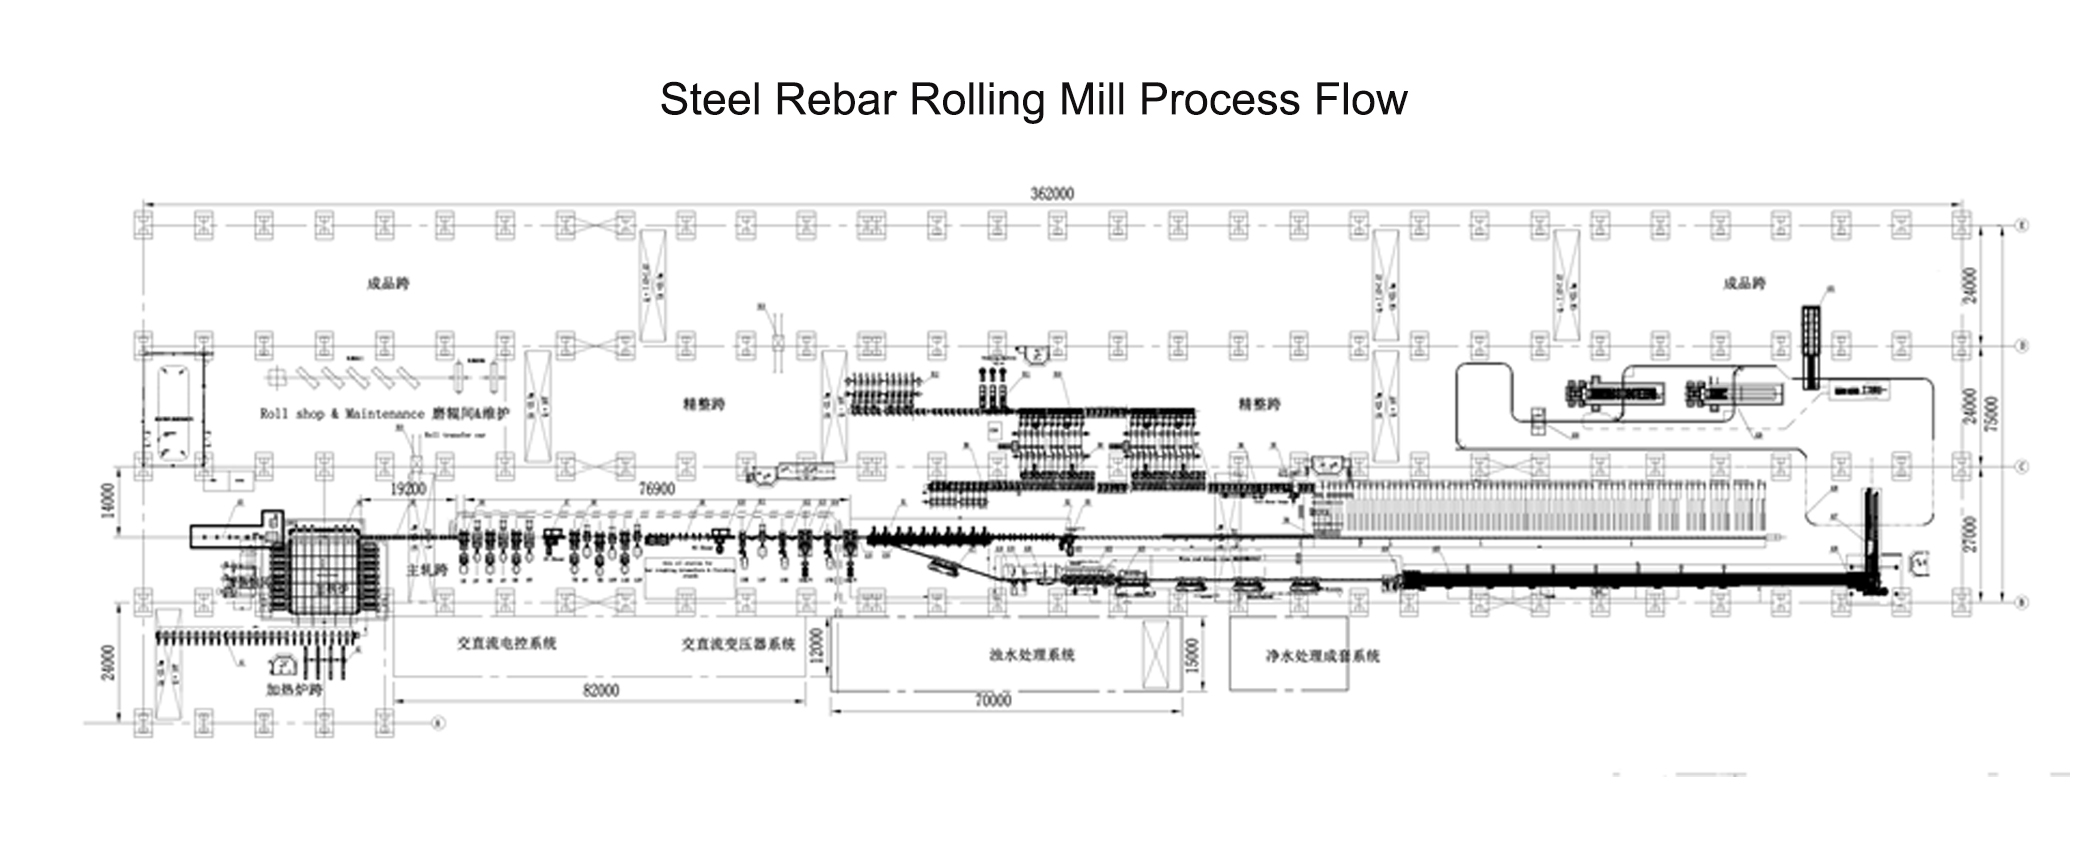 Steel Rebar Rolling Mill Process Flow